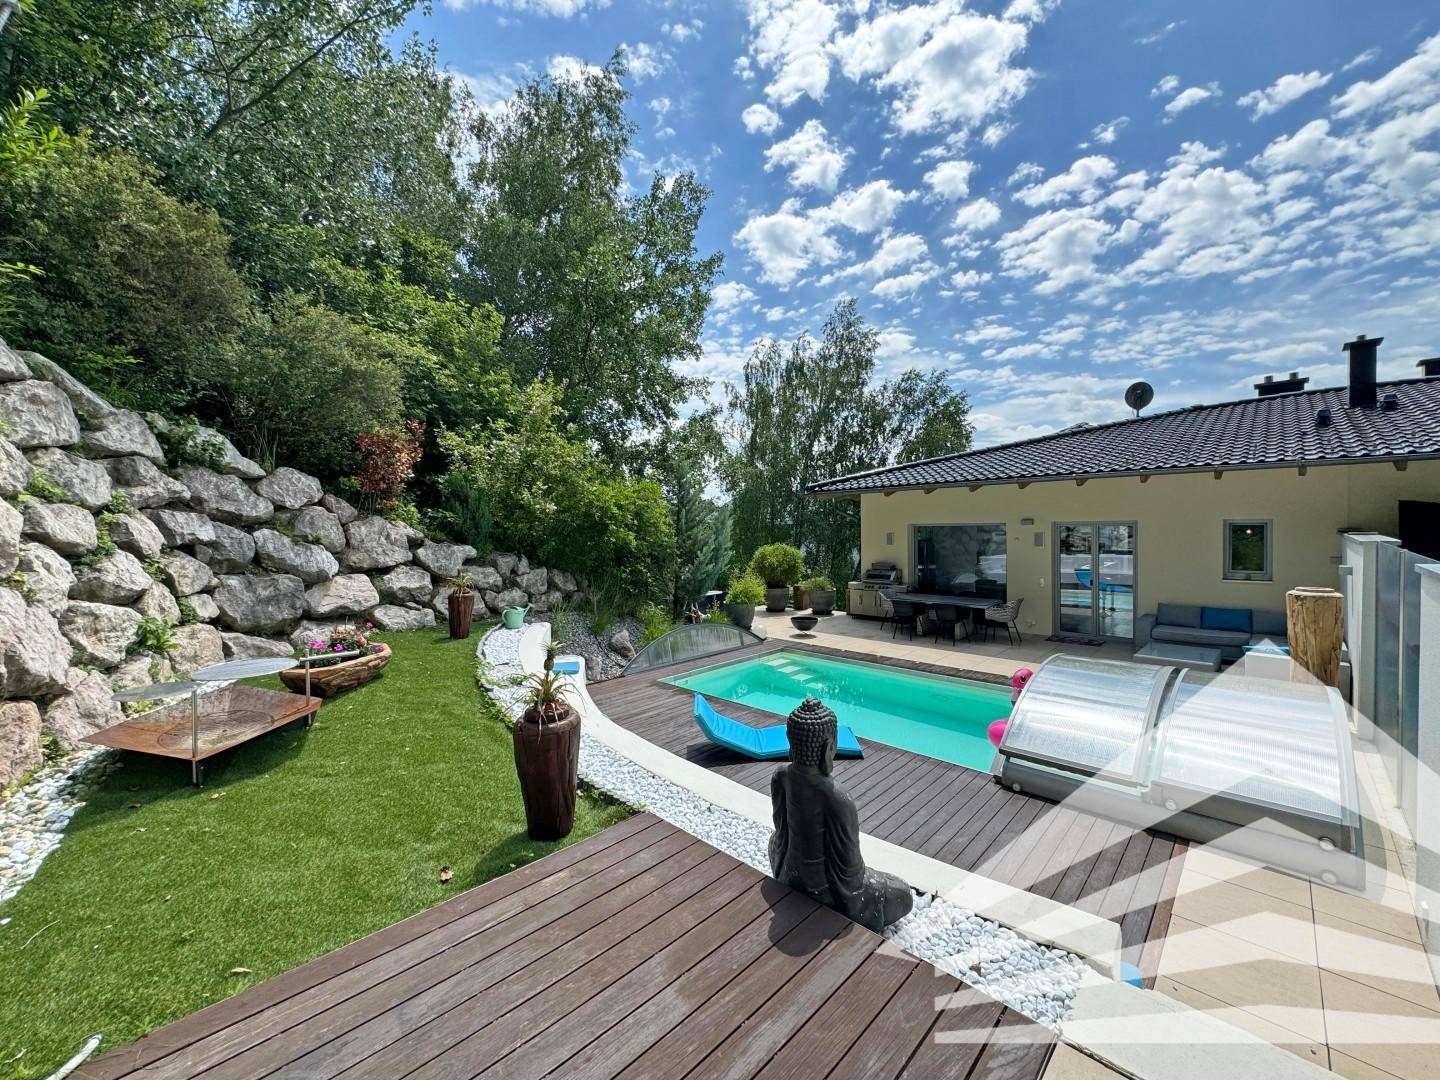 Terrasse | Pool | Garten